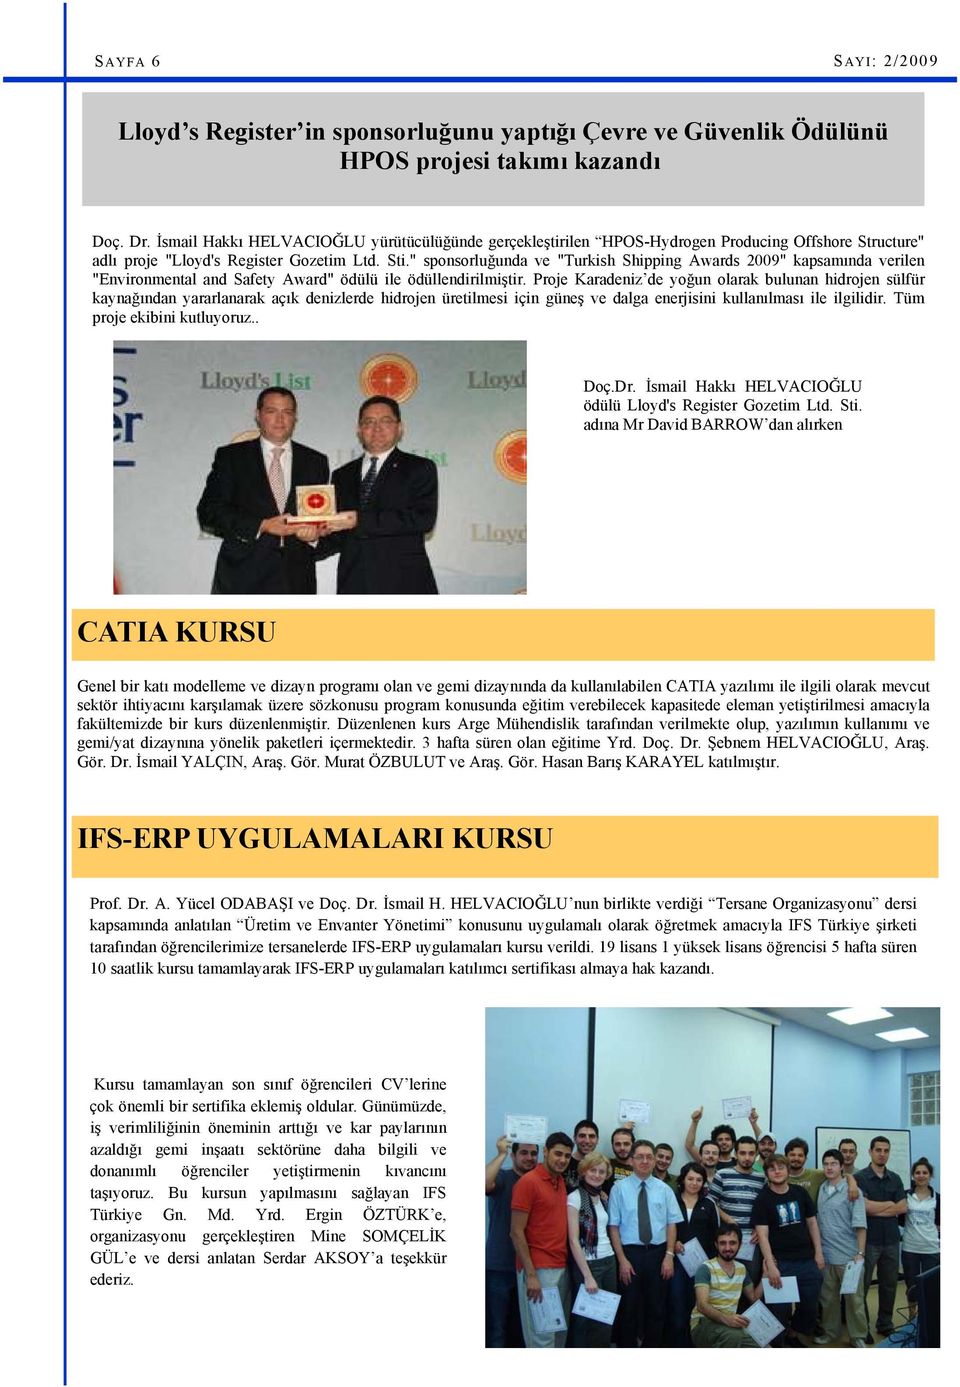 " sponsorluğunda ve "Turkish Shipping Awards 2009" kapsamında verilen "Environmental and Safety Award" ödülü ile ödüllendirilmiştir.